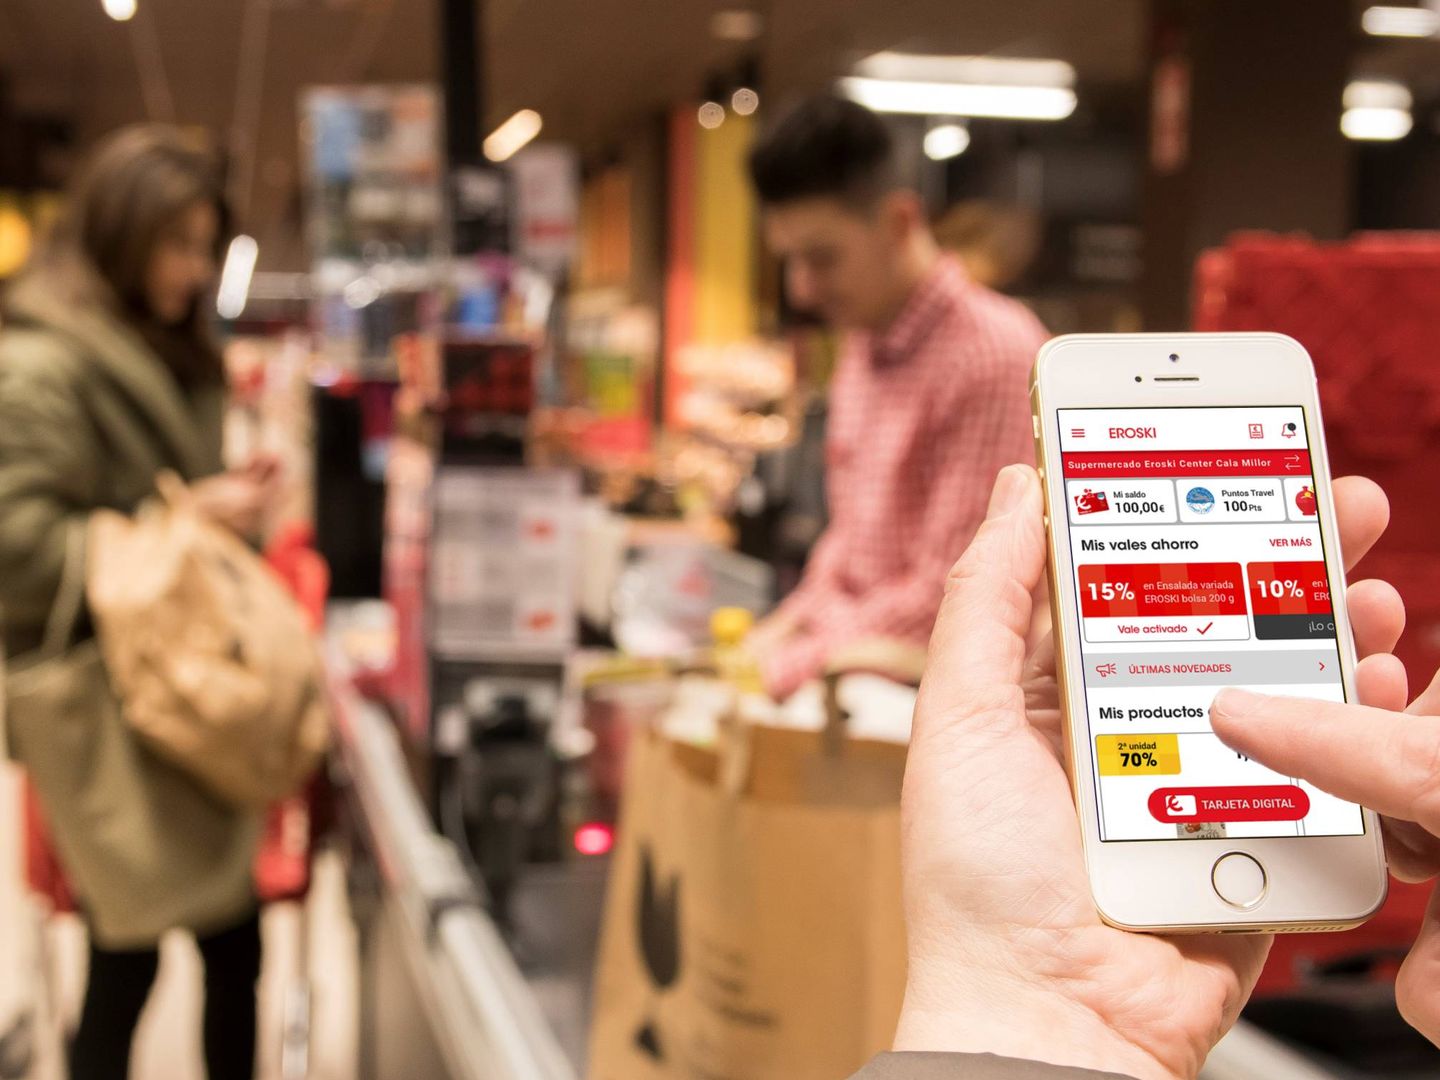 El dispositivo móvil acompaña al consumidor en todo el proceso de compra. (Eroski)